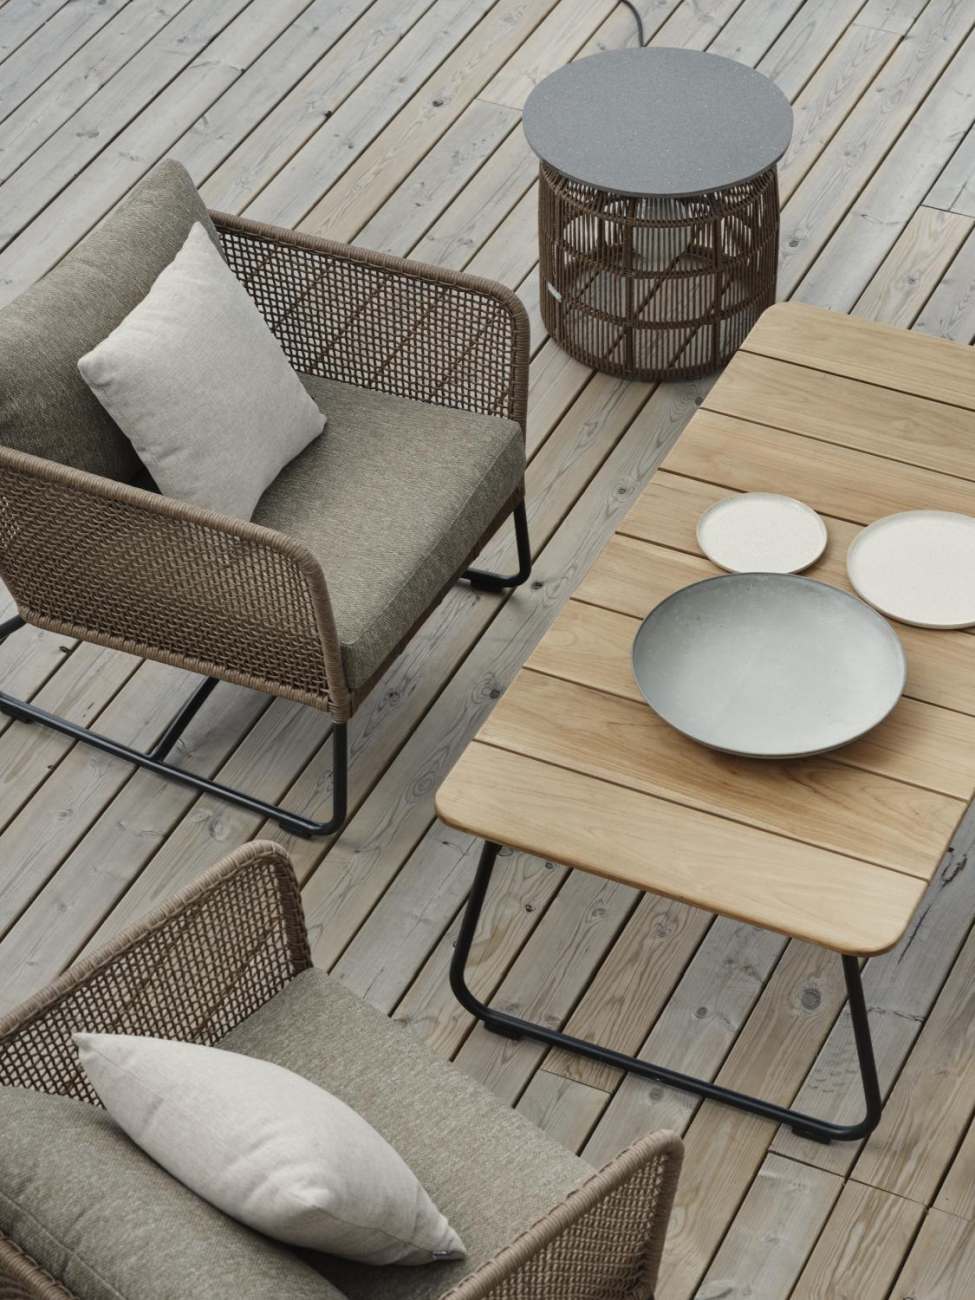 Der Gartenbeistelltisch Nolli überzeugt mit seinem modernen Design. Gefertigt wurde die Tischplatte aus Teakholz und hat einen natürlichen Farbton. Das Gestell ist auch aus Metall und hat eine schwarze Farbe. Der Tisch besitzt eine Länge von 140 cm.